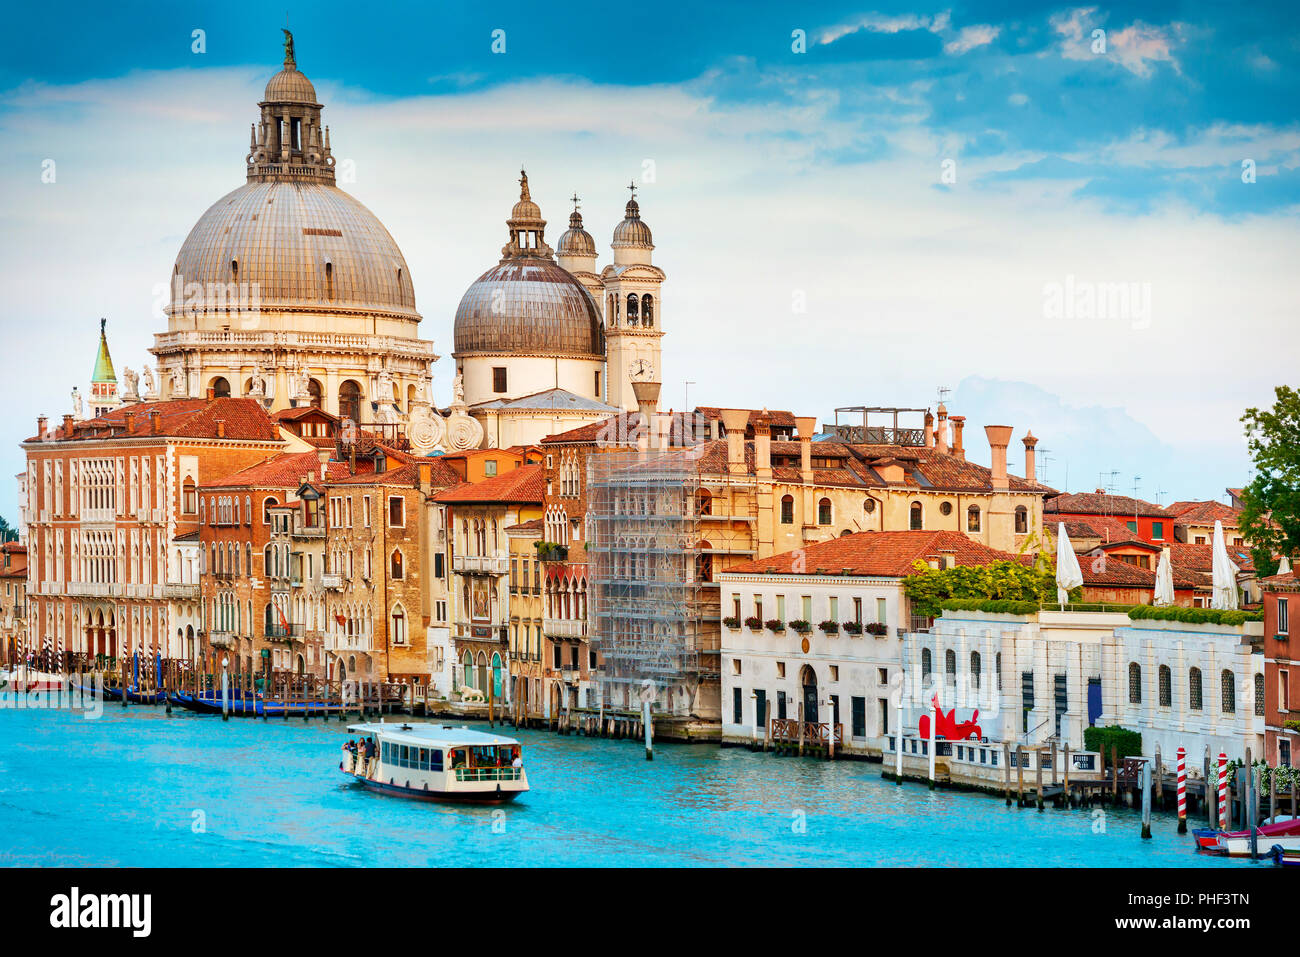 Grand Canal de Venise, Italie Banque D'Images